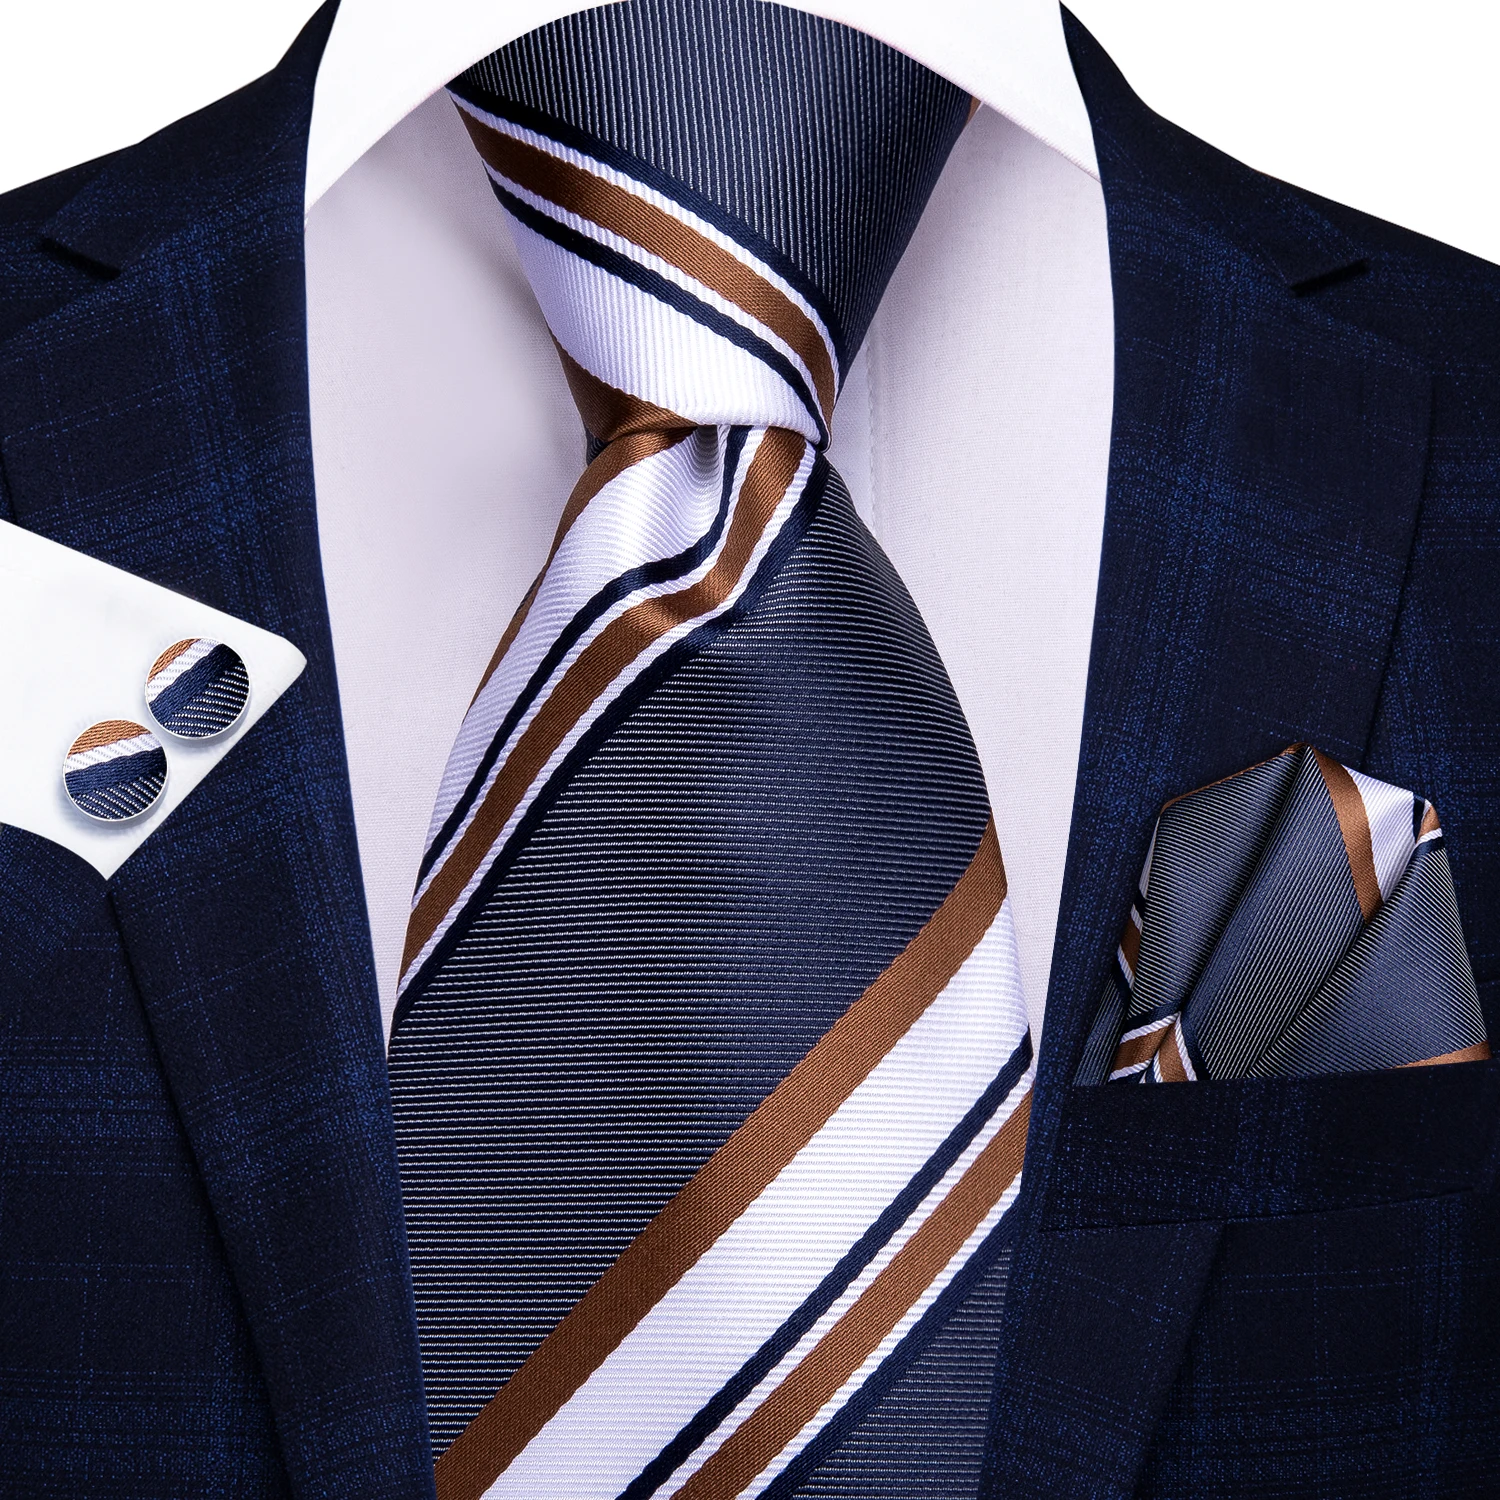 Фото Привет-галстук серый белый полосатый Шелковый Свадебный галстук для мужчин Handky